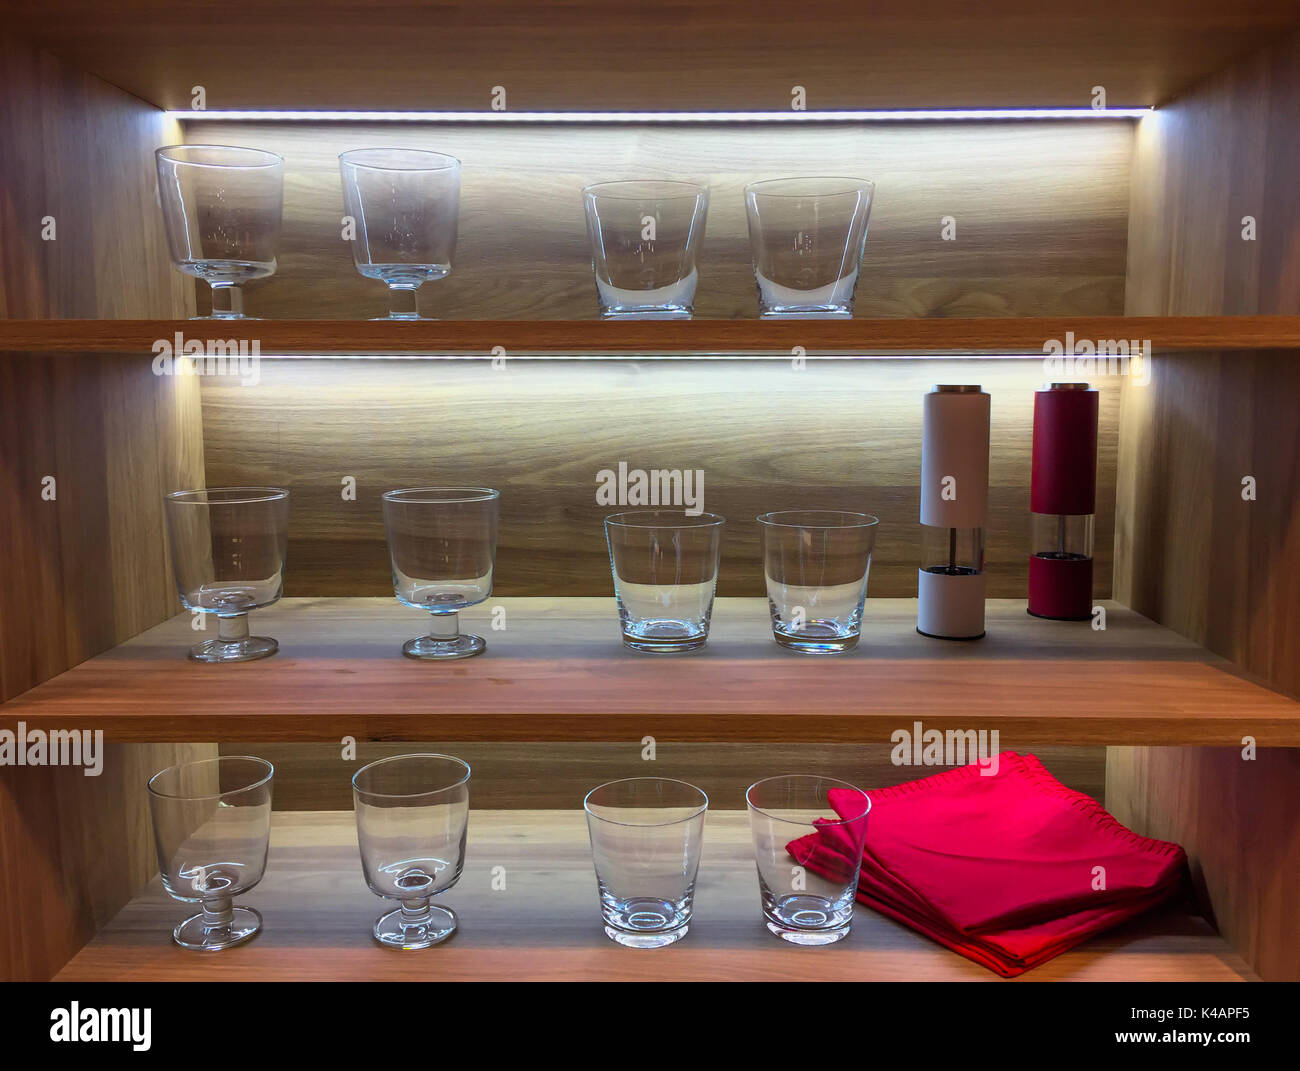 Cuisine étagère avec verres vides et l'éclairage de l'intérieur, design en bois Banque D'Images